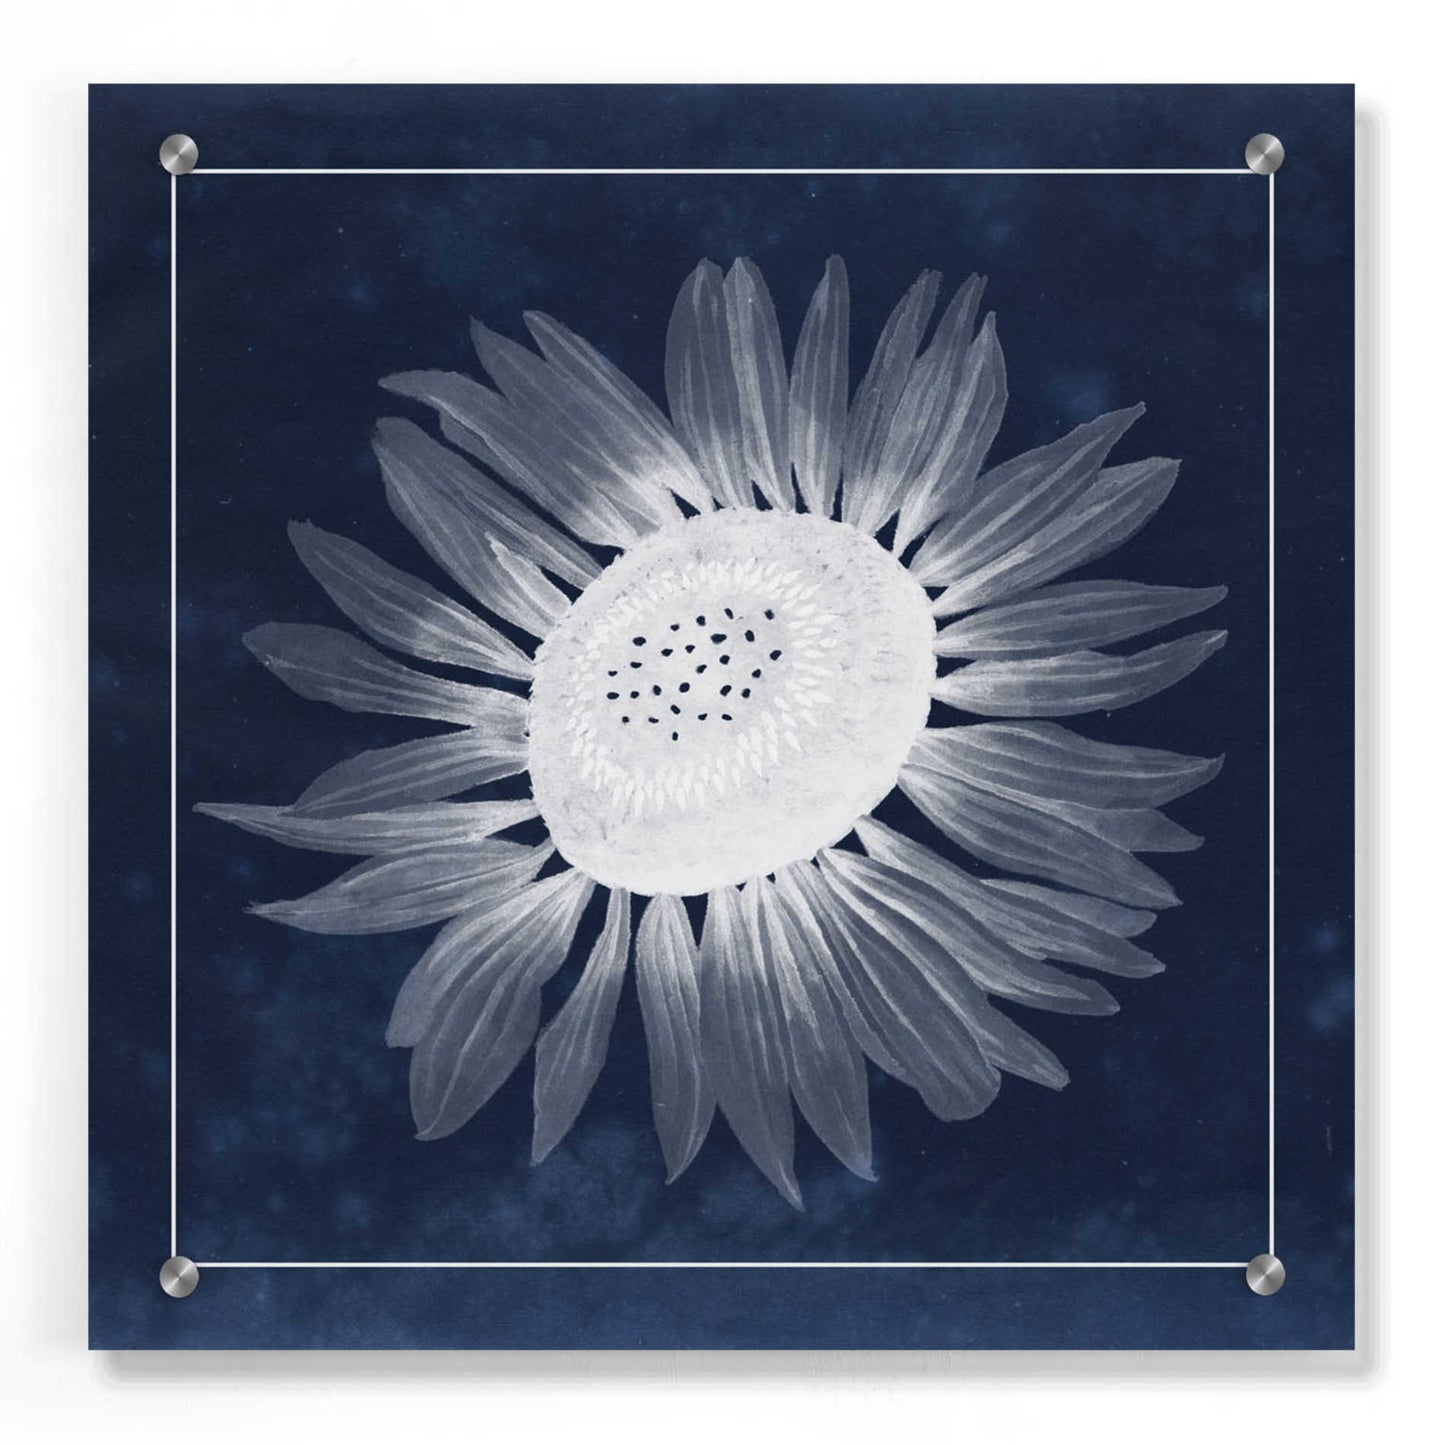 Epic Art 'Moon Flower II' by Grace Popp, Acrylic Wall Glass,36x36